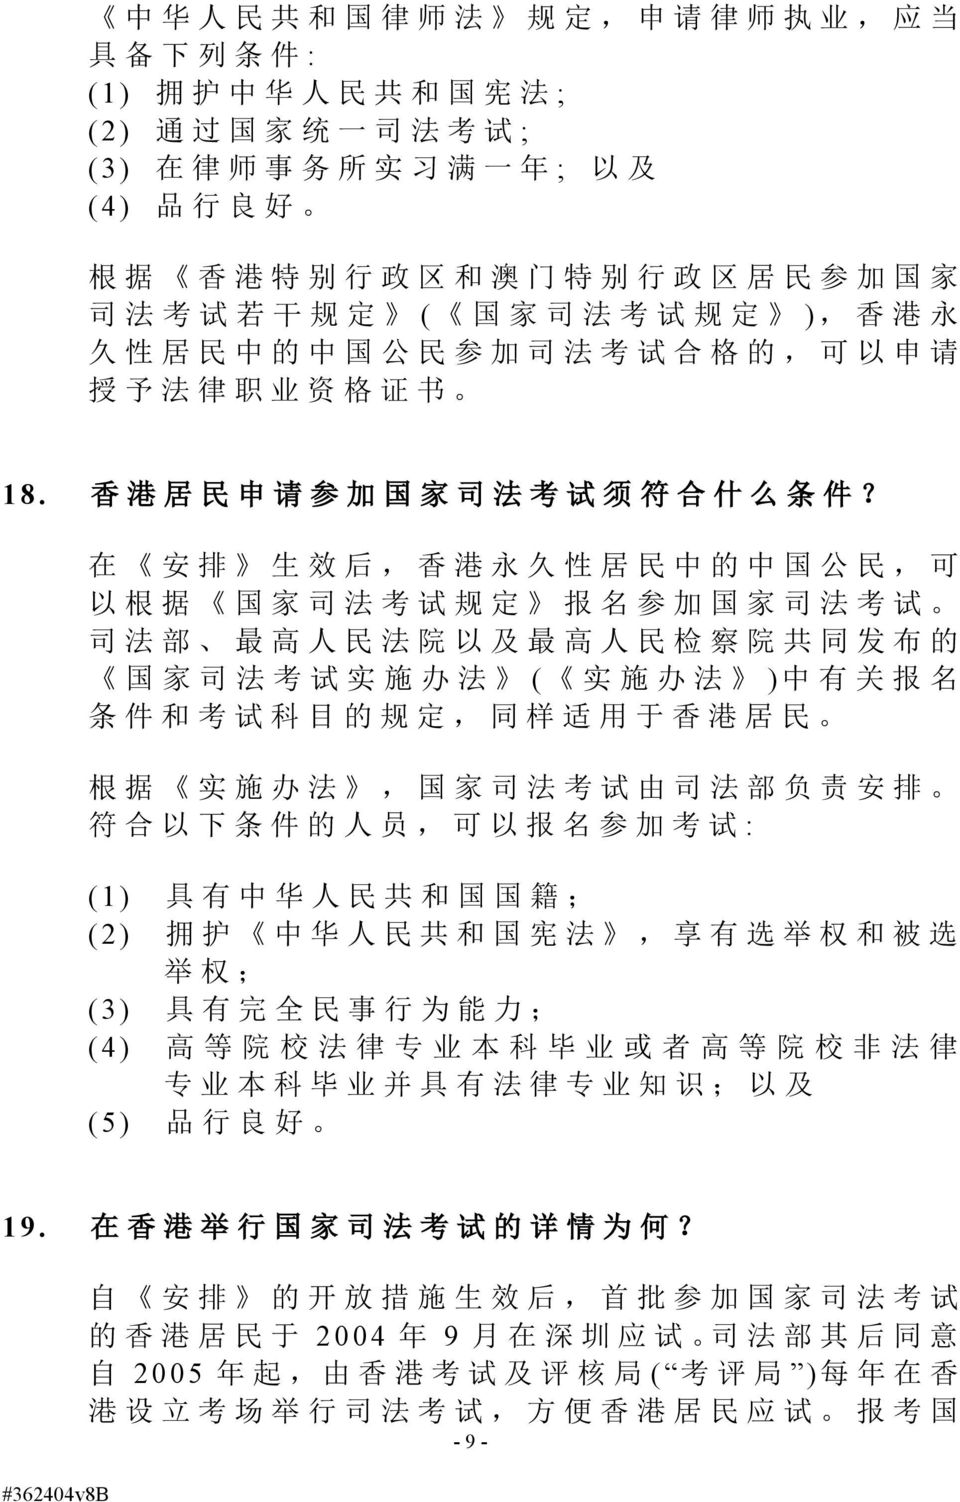 在 安 排 生 效 后, 香 港 永 久 性 居 民 中 的 中 国 公 民, 可 以 根 据 国 家 司 法 考 试 规 定 报 名 参 加 国 家 司 法 考 试 司 法 部 最 高 人 民 法 院 以 及 最 高 人 民 检 察 院 共 同 发 布 的 国 家 司 法 考 试 实 施 办 法 ( 实 施 办 法 ) 中 有 关 报 名 条 件 和 考 试 科 目 的 规 定, 同 样 适